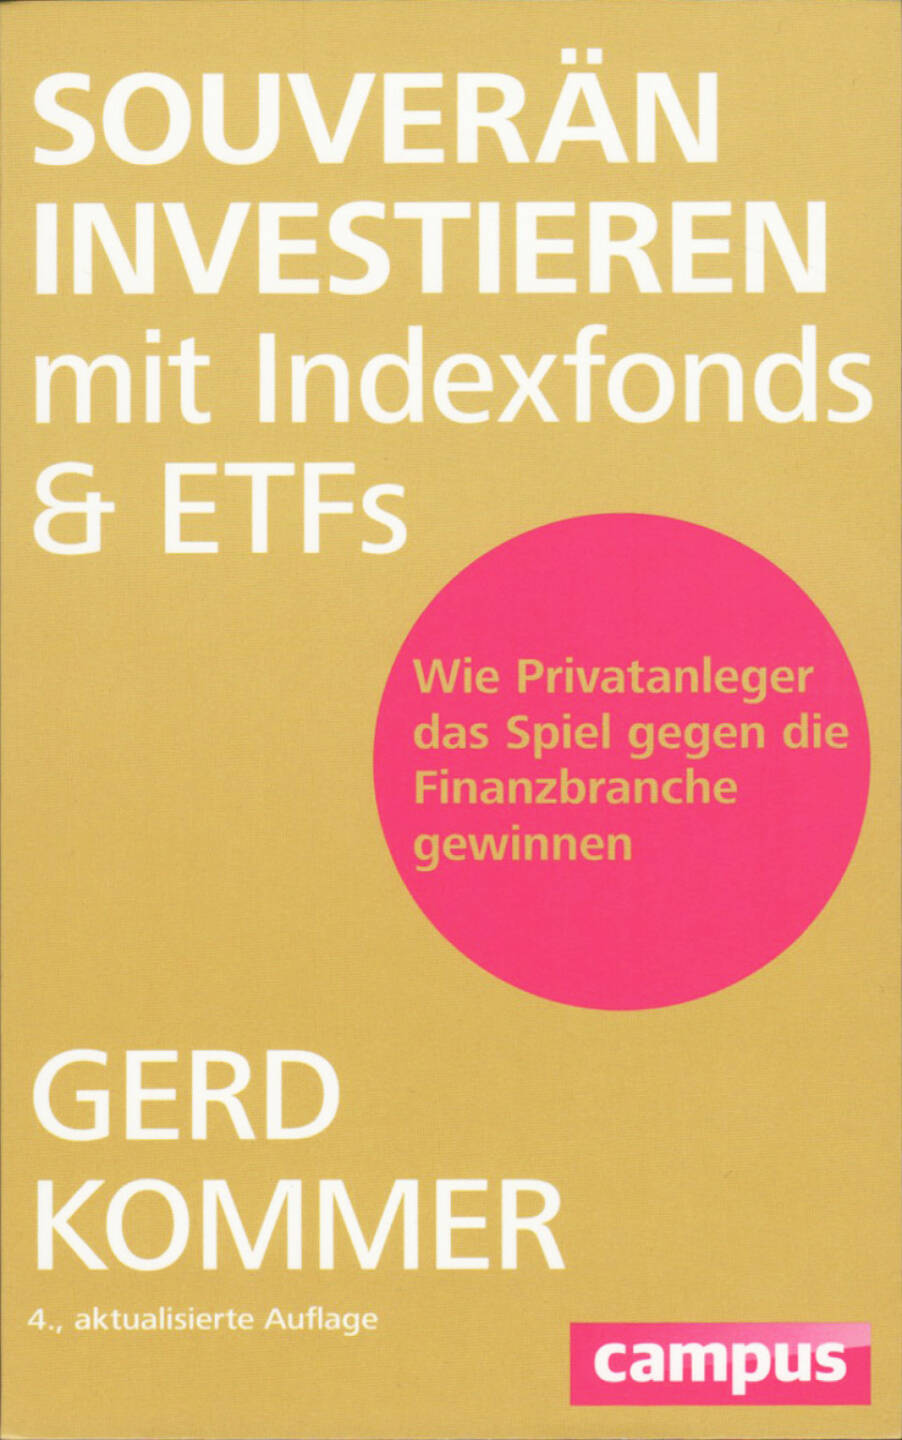 Gerd Kommer - Souverän investieren mit Indexfonds und ETFs: Wie Privatanleger das Spiel gegen die Finanzbranche gewinnen, http://boerse-social.com/financebooks/show/_gerd_kommer_-_souveran_investieren_mit_indexfonds_und_etfs_wie_privatanleger_das_spiel_gegen_die_finanzbranche_gewinnen